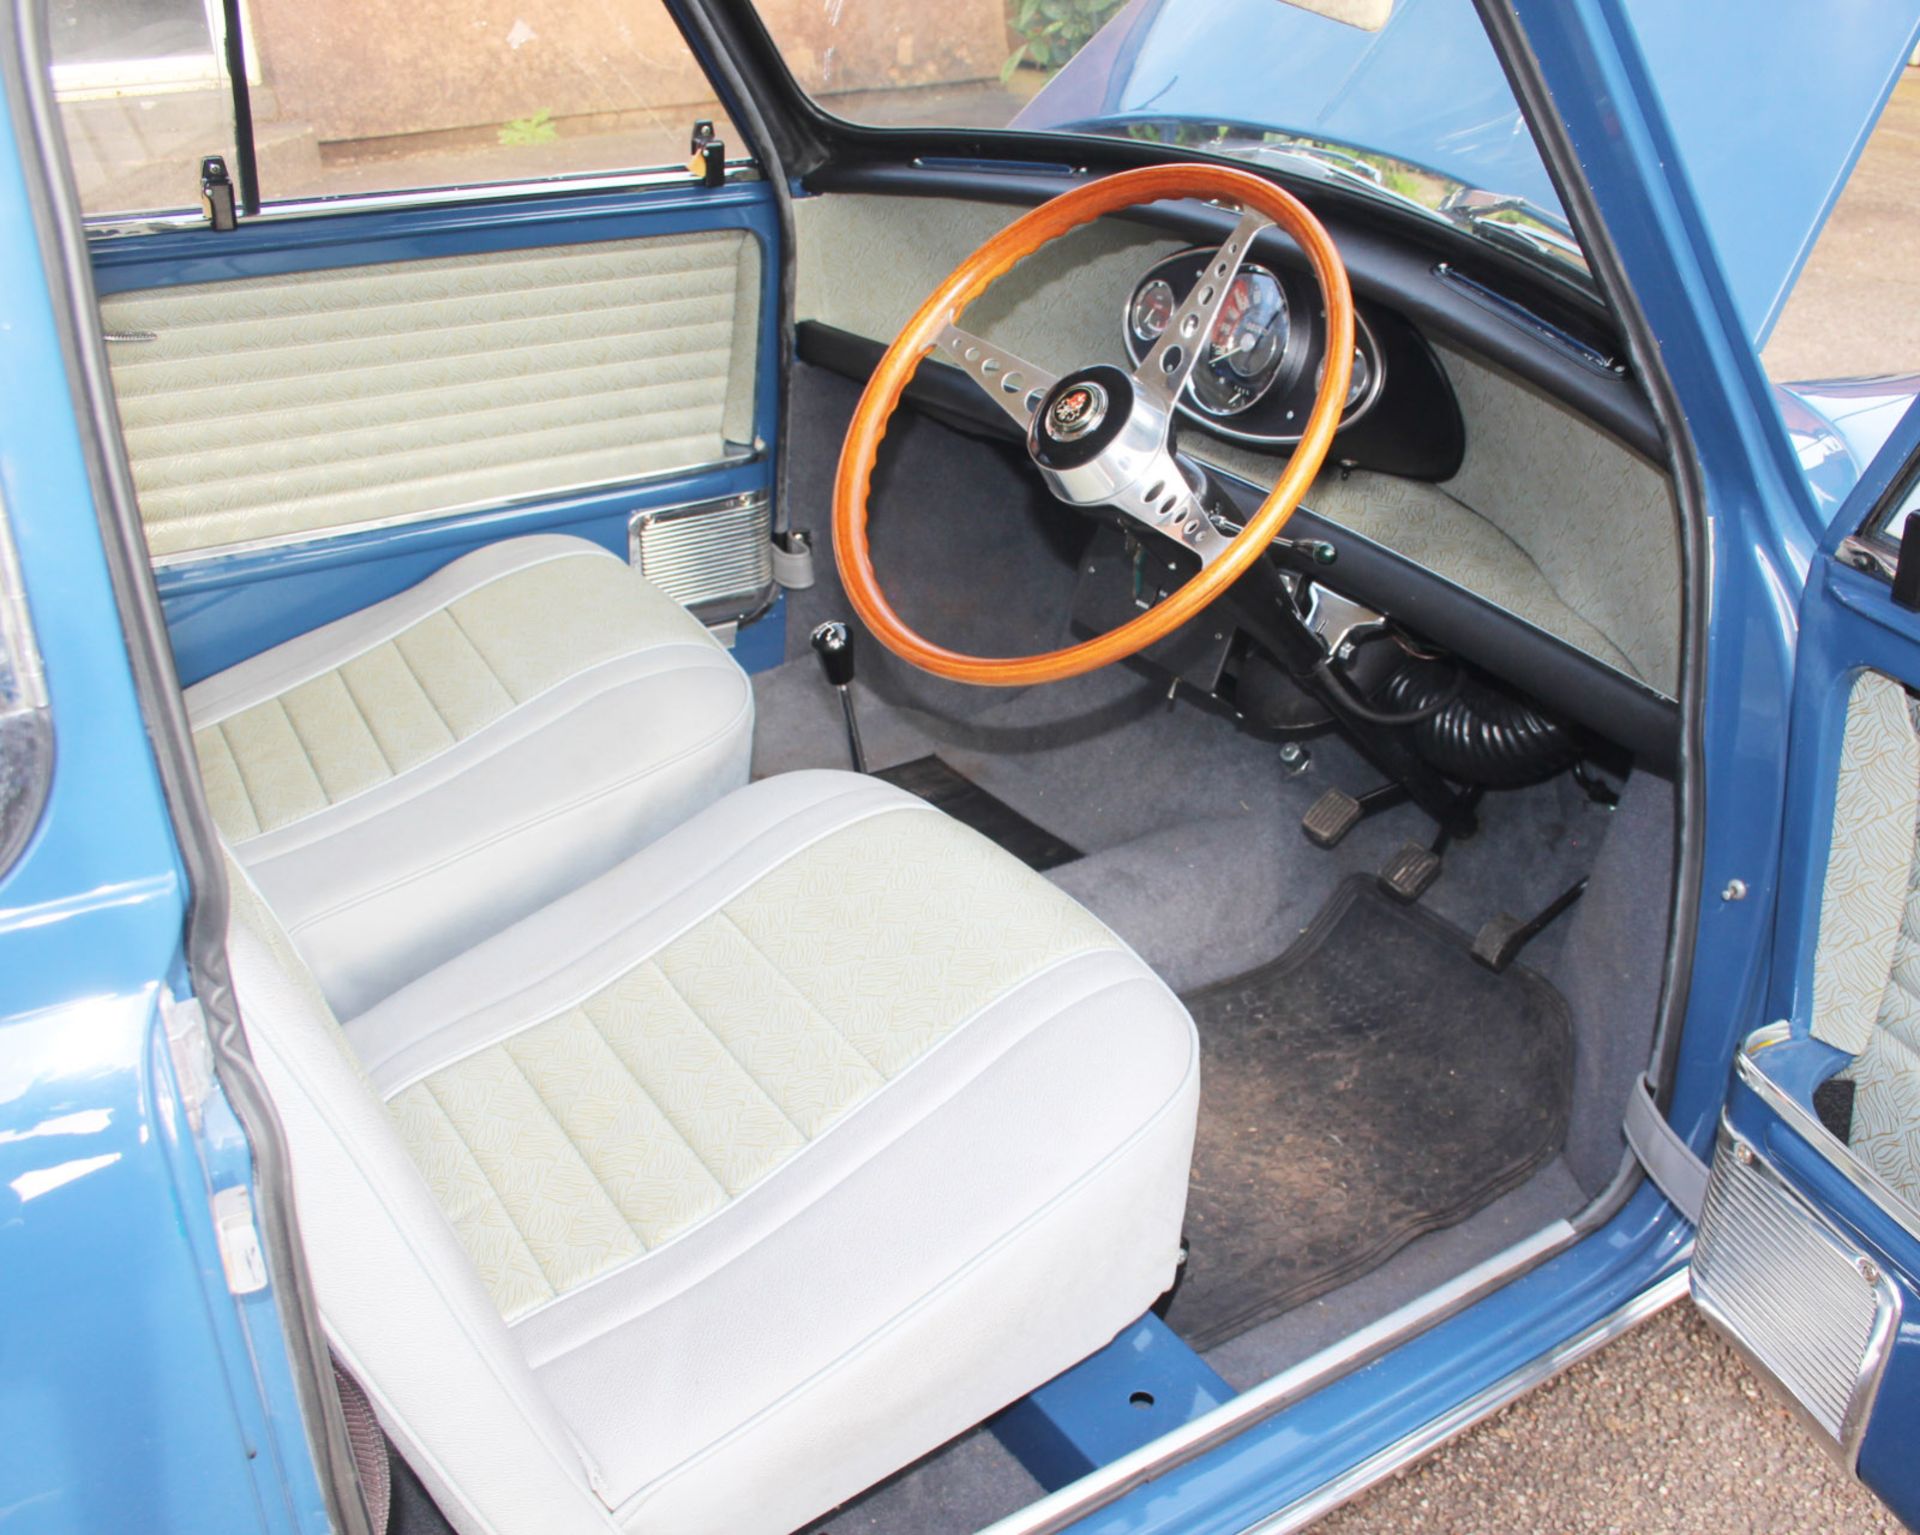 1967 Austin Mini Cooper S - Image 6 of 10